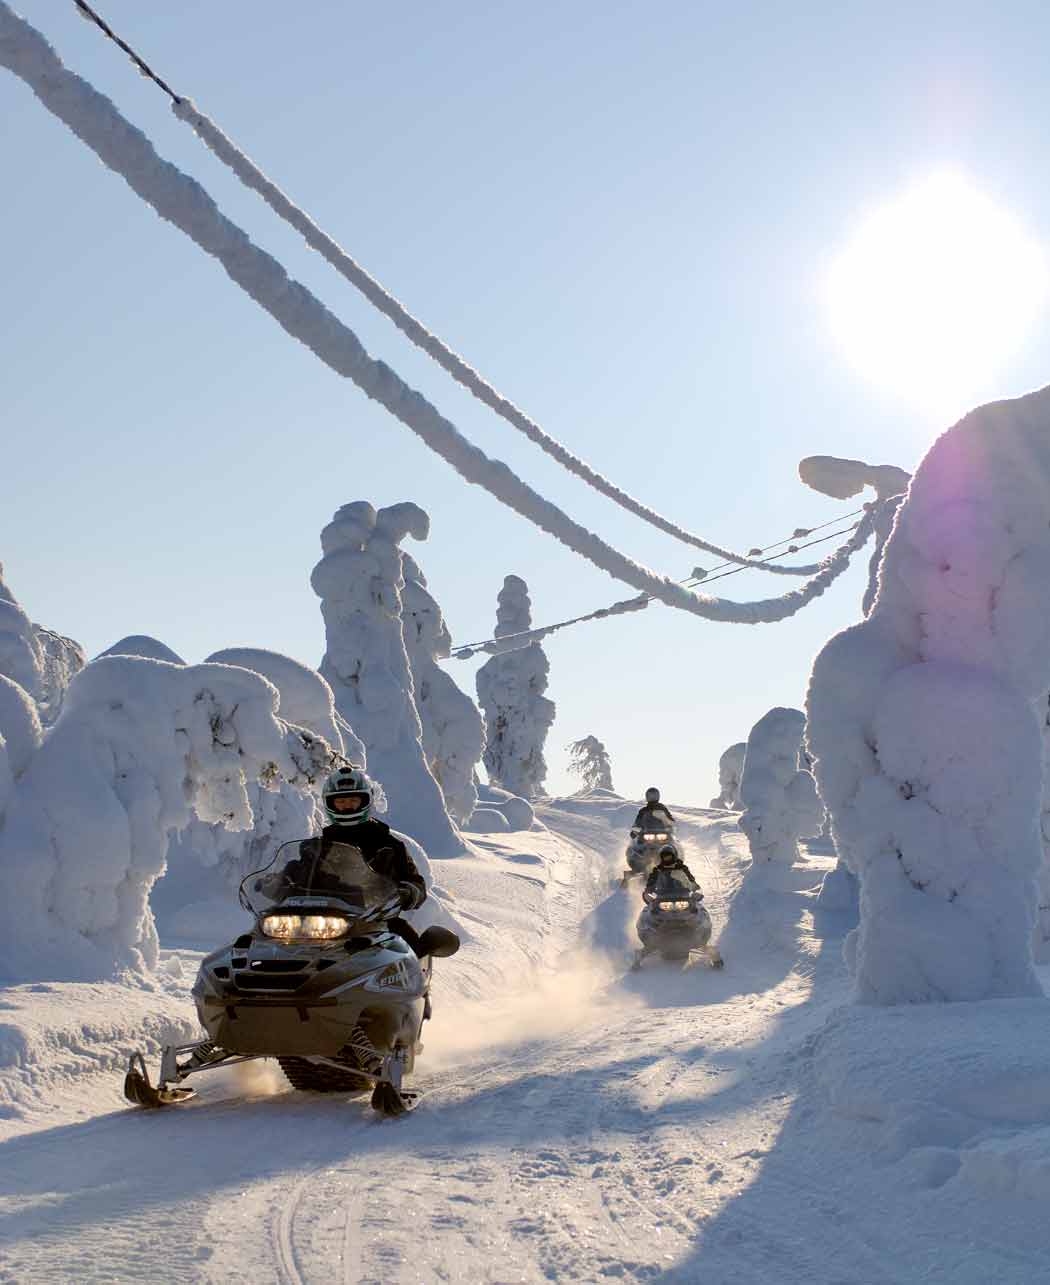 Vacaciones en moto de nieve: Donde la aventura y la libertad siguen siendo ilimitadas